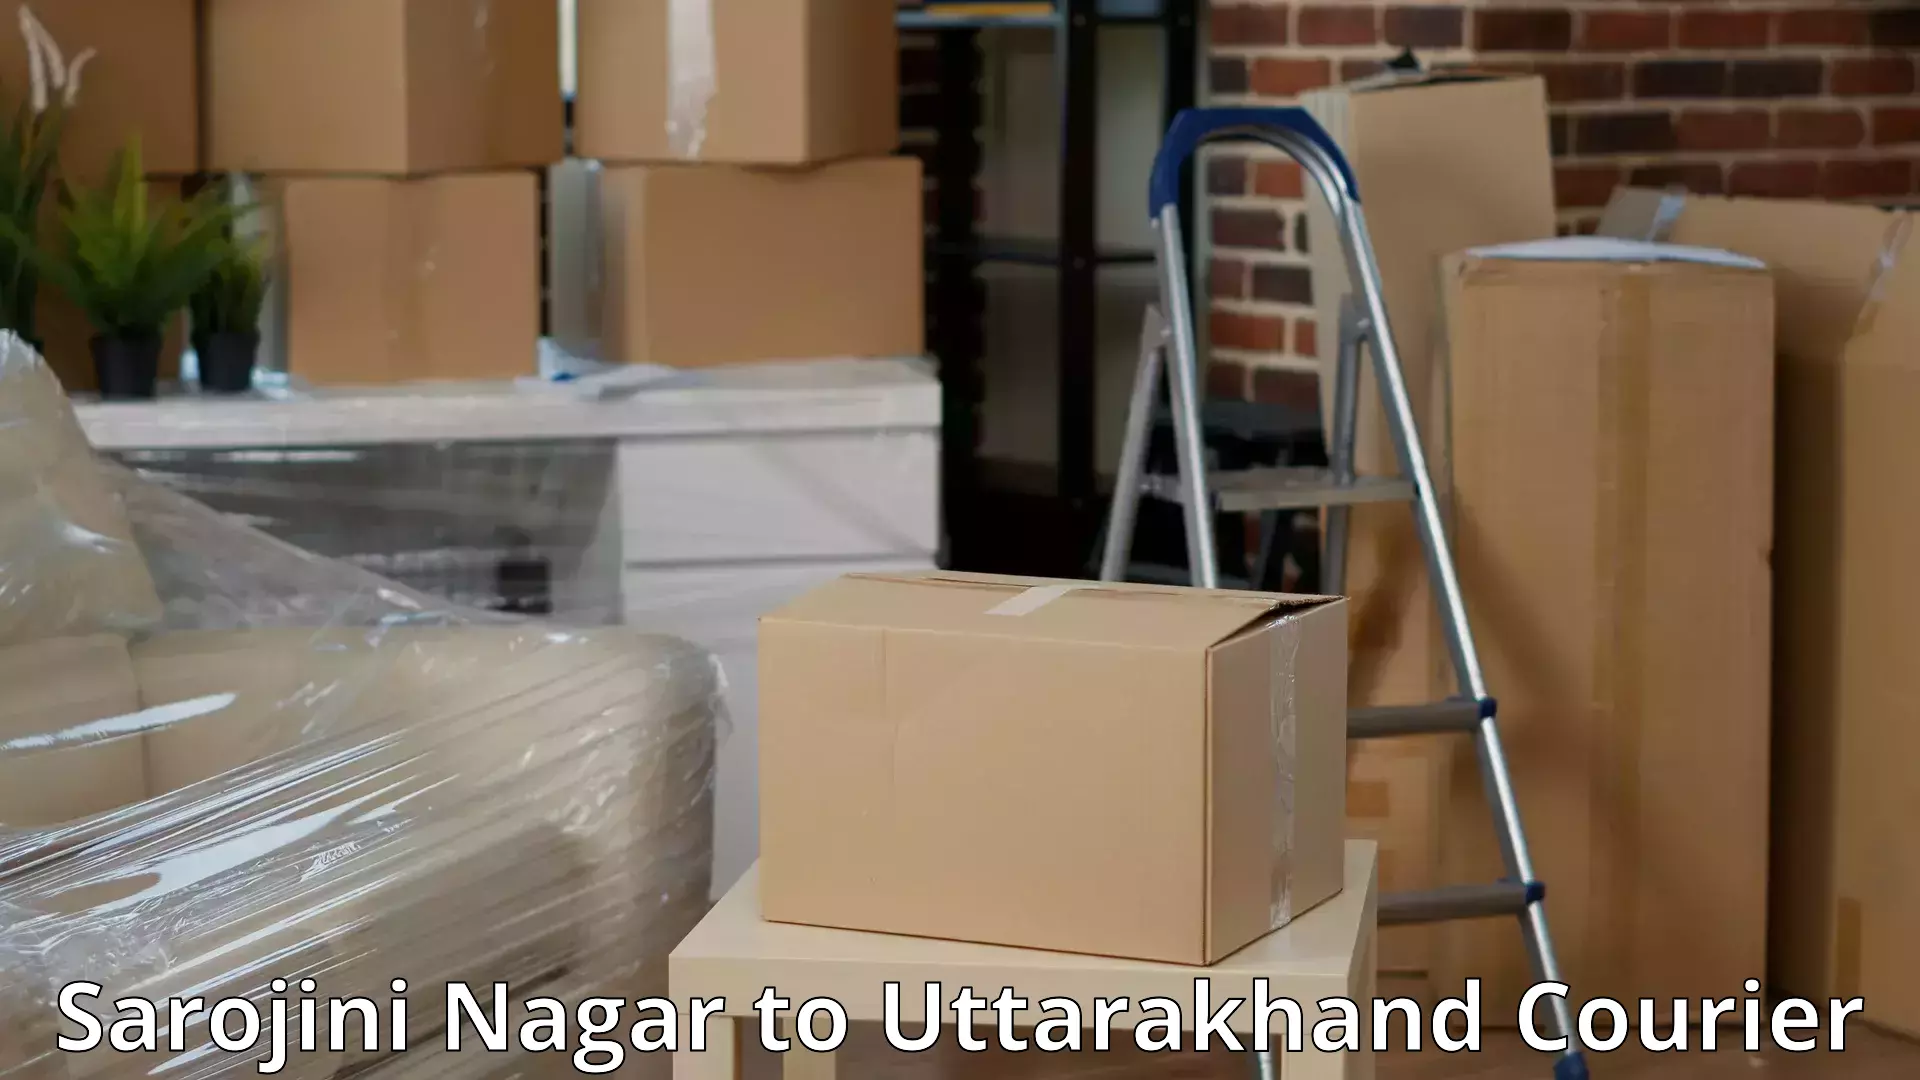 Household moving and storage Sarojini Nagar to Nainital